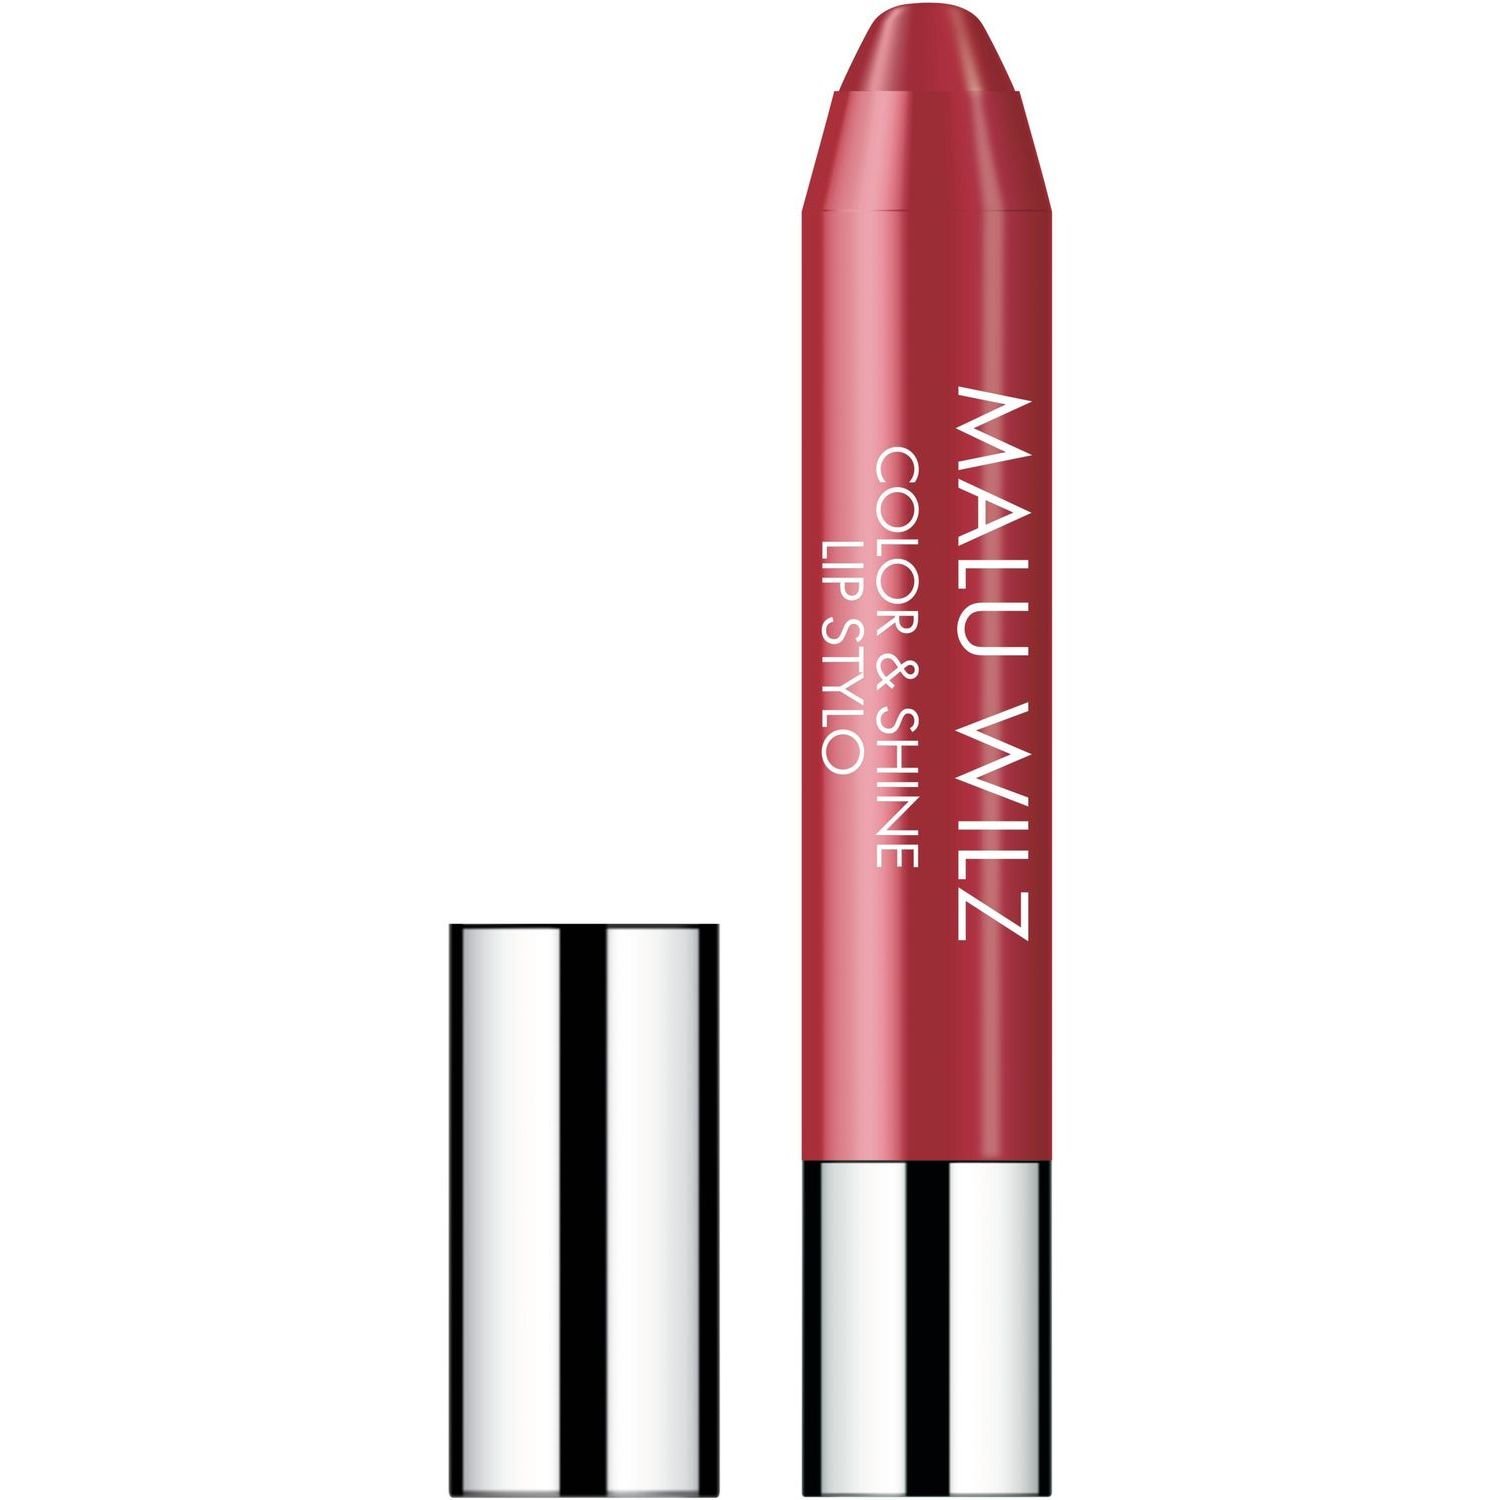 Зволожуюча губнапомада, Malu Wilz Color&Shine Lip Stylo, відтінок 20 (солодкий рожевий), 11 г - фото 1